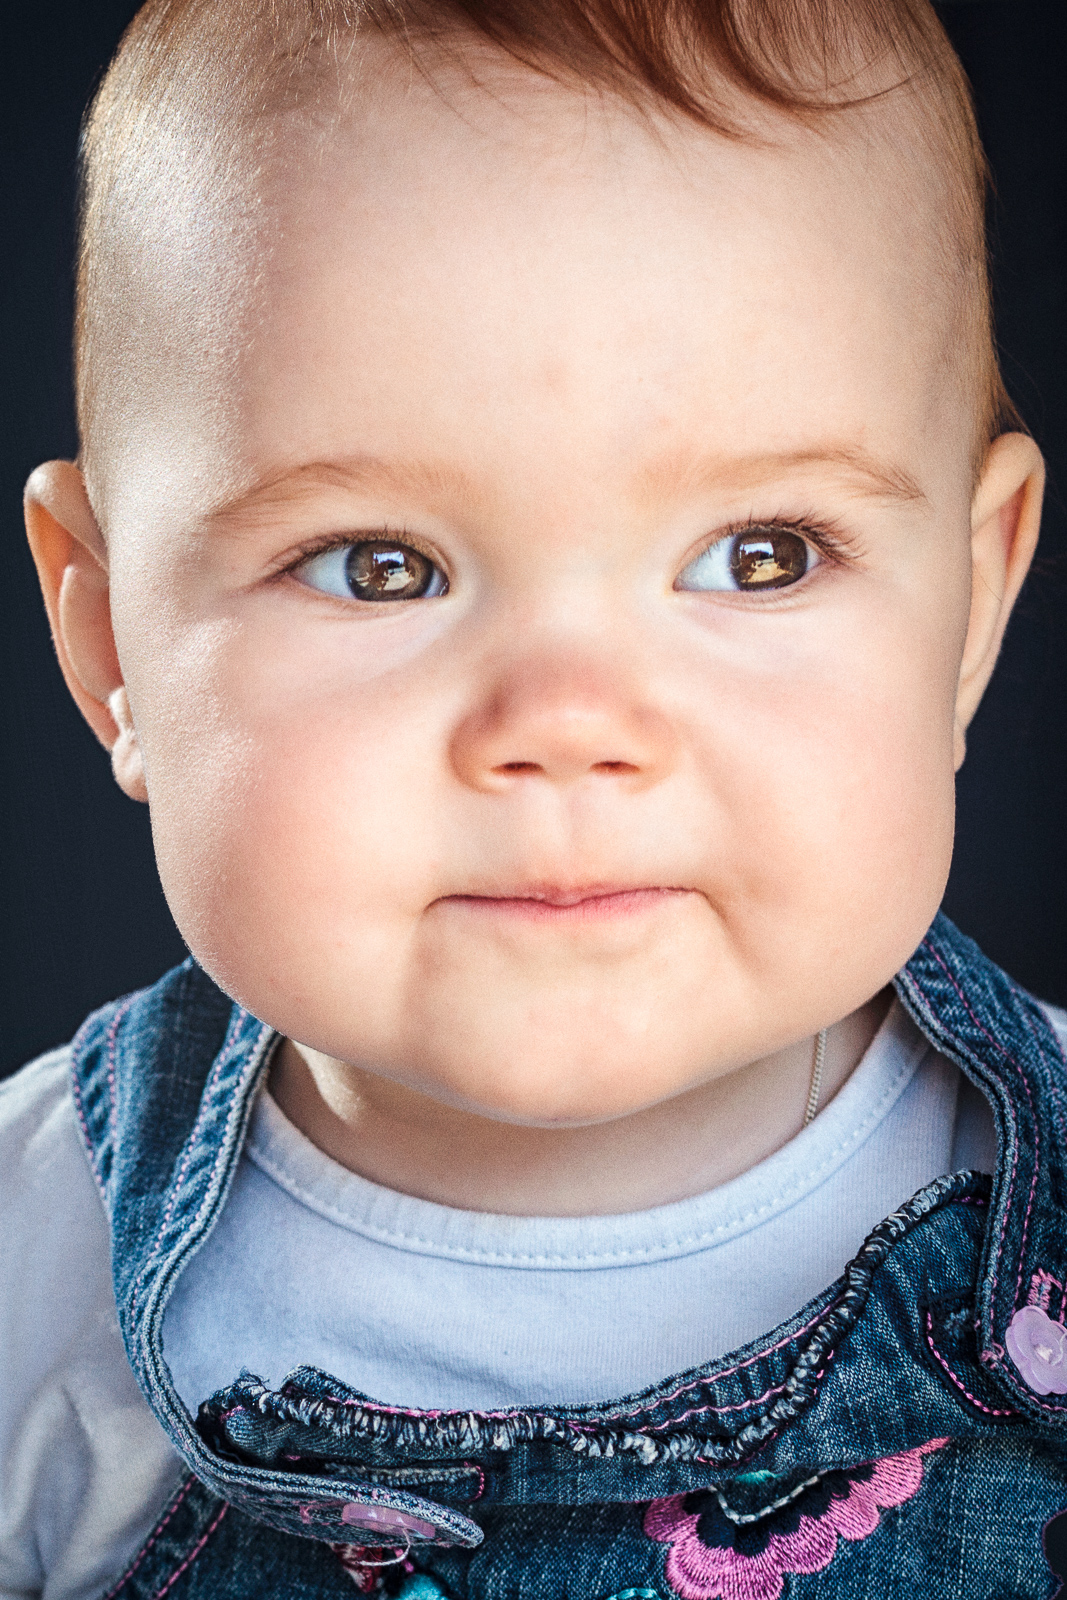 Lapset vauvakuvaus lapsikuvaus portrait studio evinromental miljöö choldren newborn bany